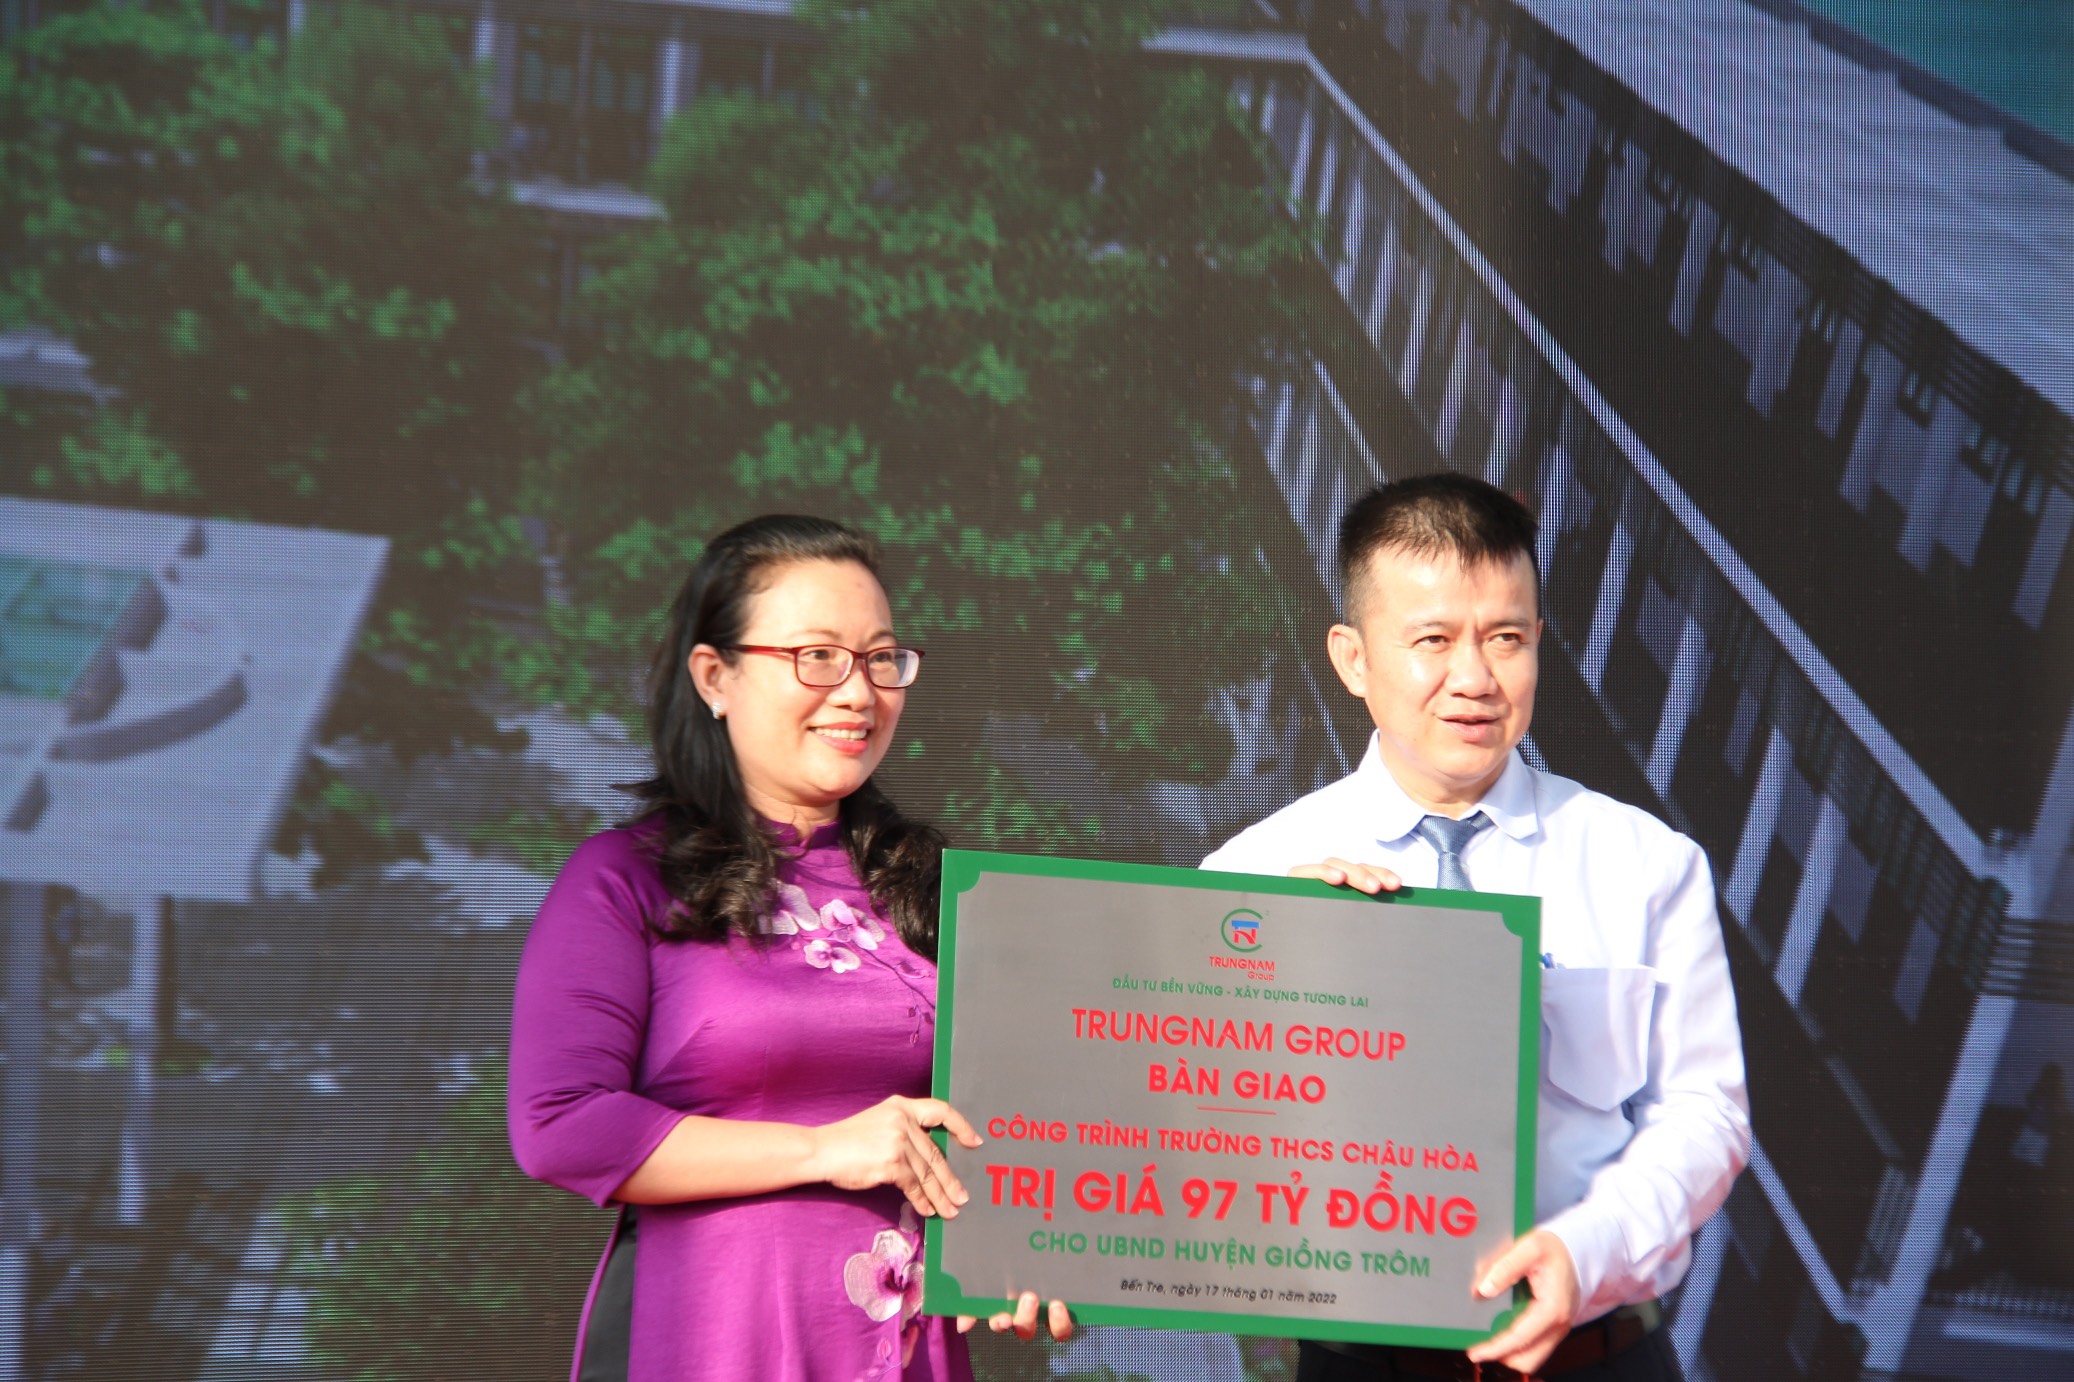 Kinh tế - Bến Tre: Trung Nam Group khánh thành trường THCS Châu Hòa tổng kinh phí 97 tỷ đồng (Hình 3).